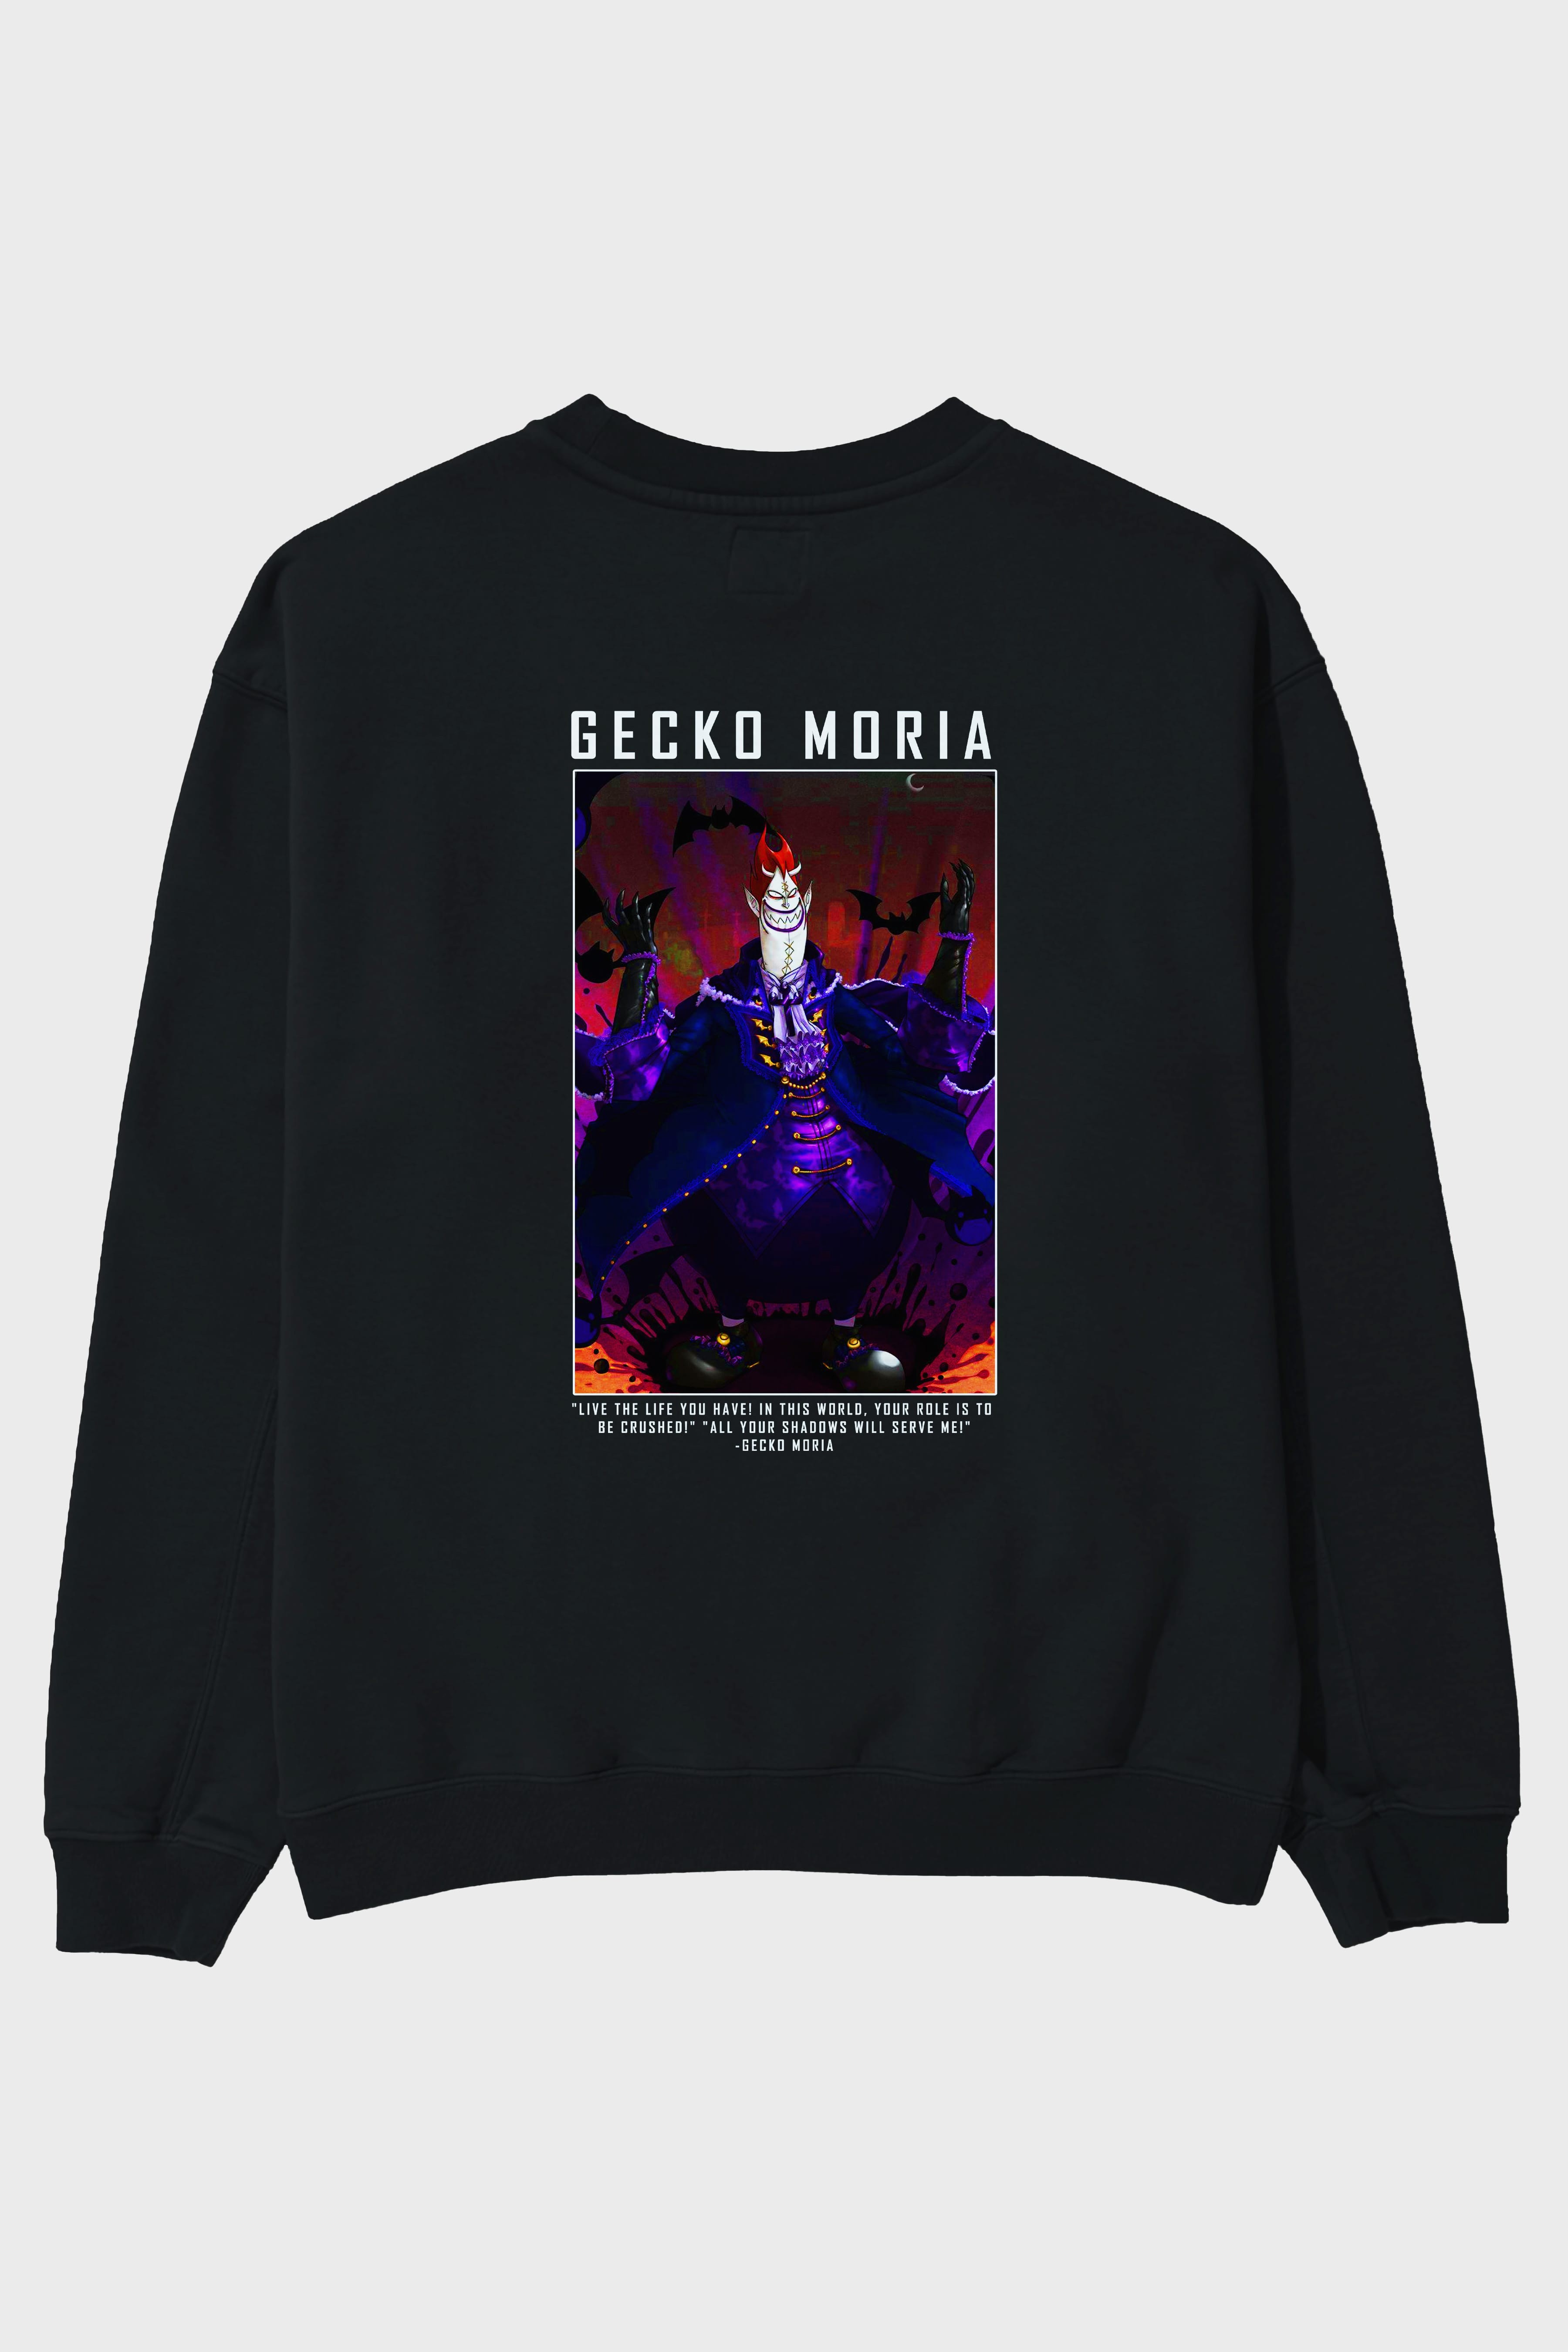 Gecko Moria Arka Baskılı Anime Oversize Sweatshirt Erkek Kadın Unisex